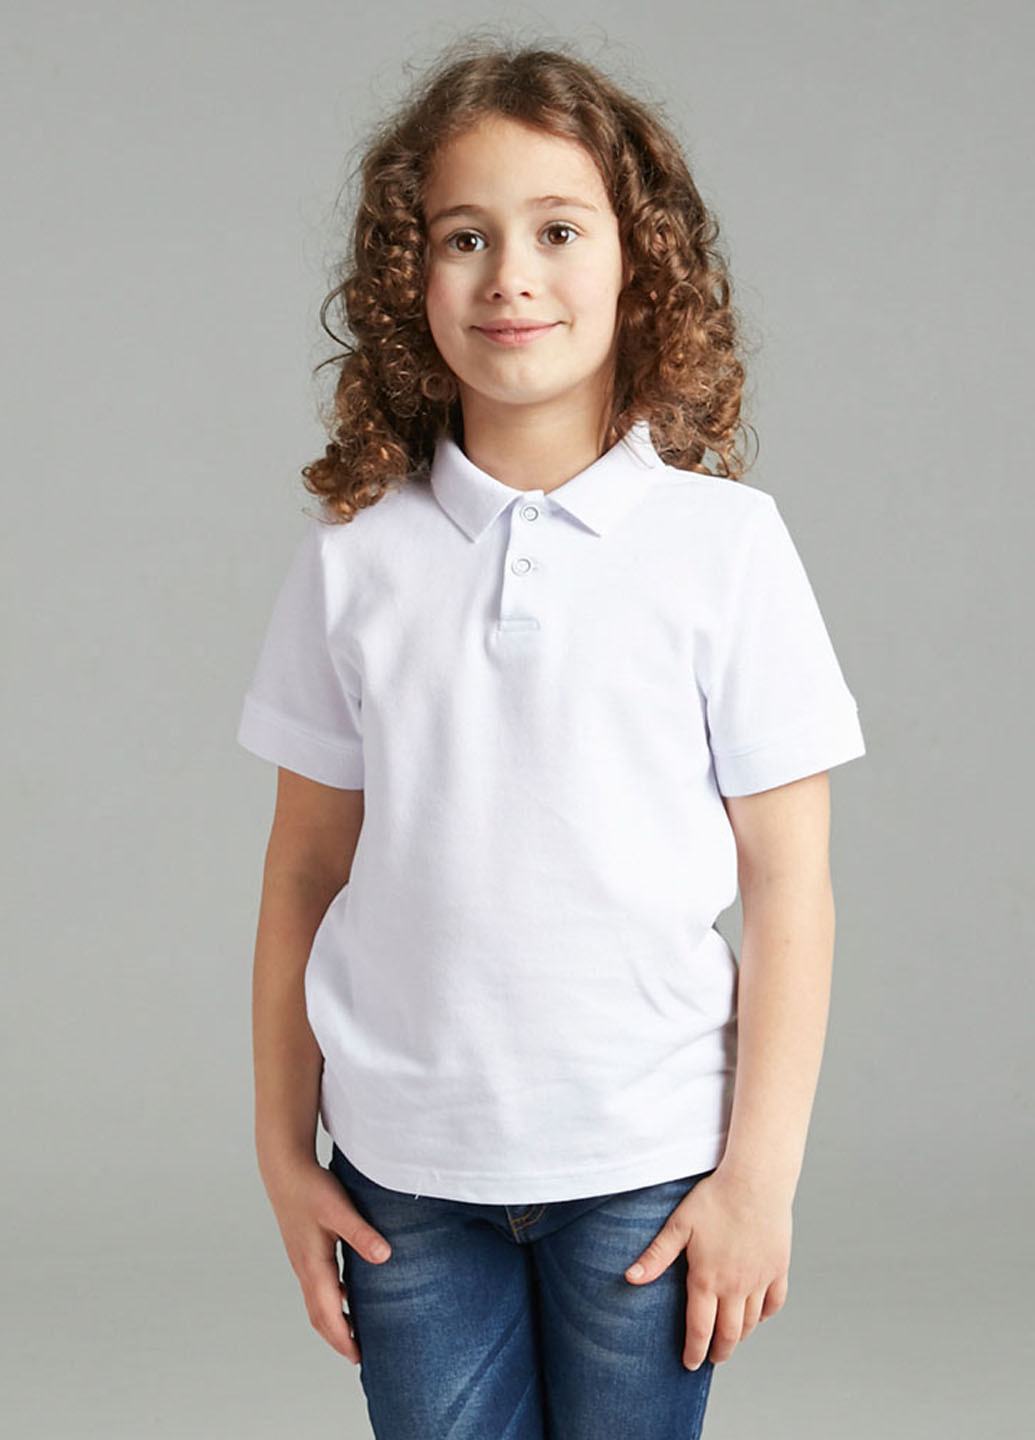 Белая детская футболка-поло для мальчика Promin однотонная